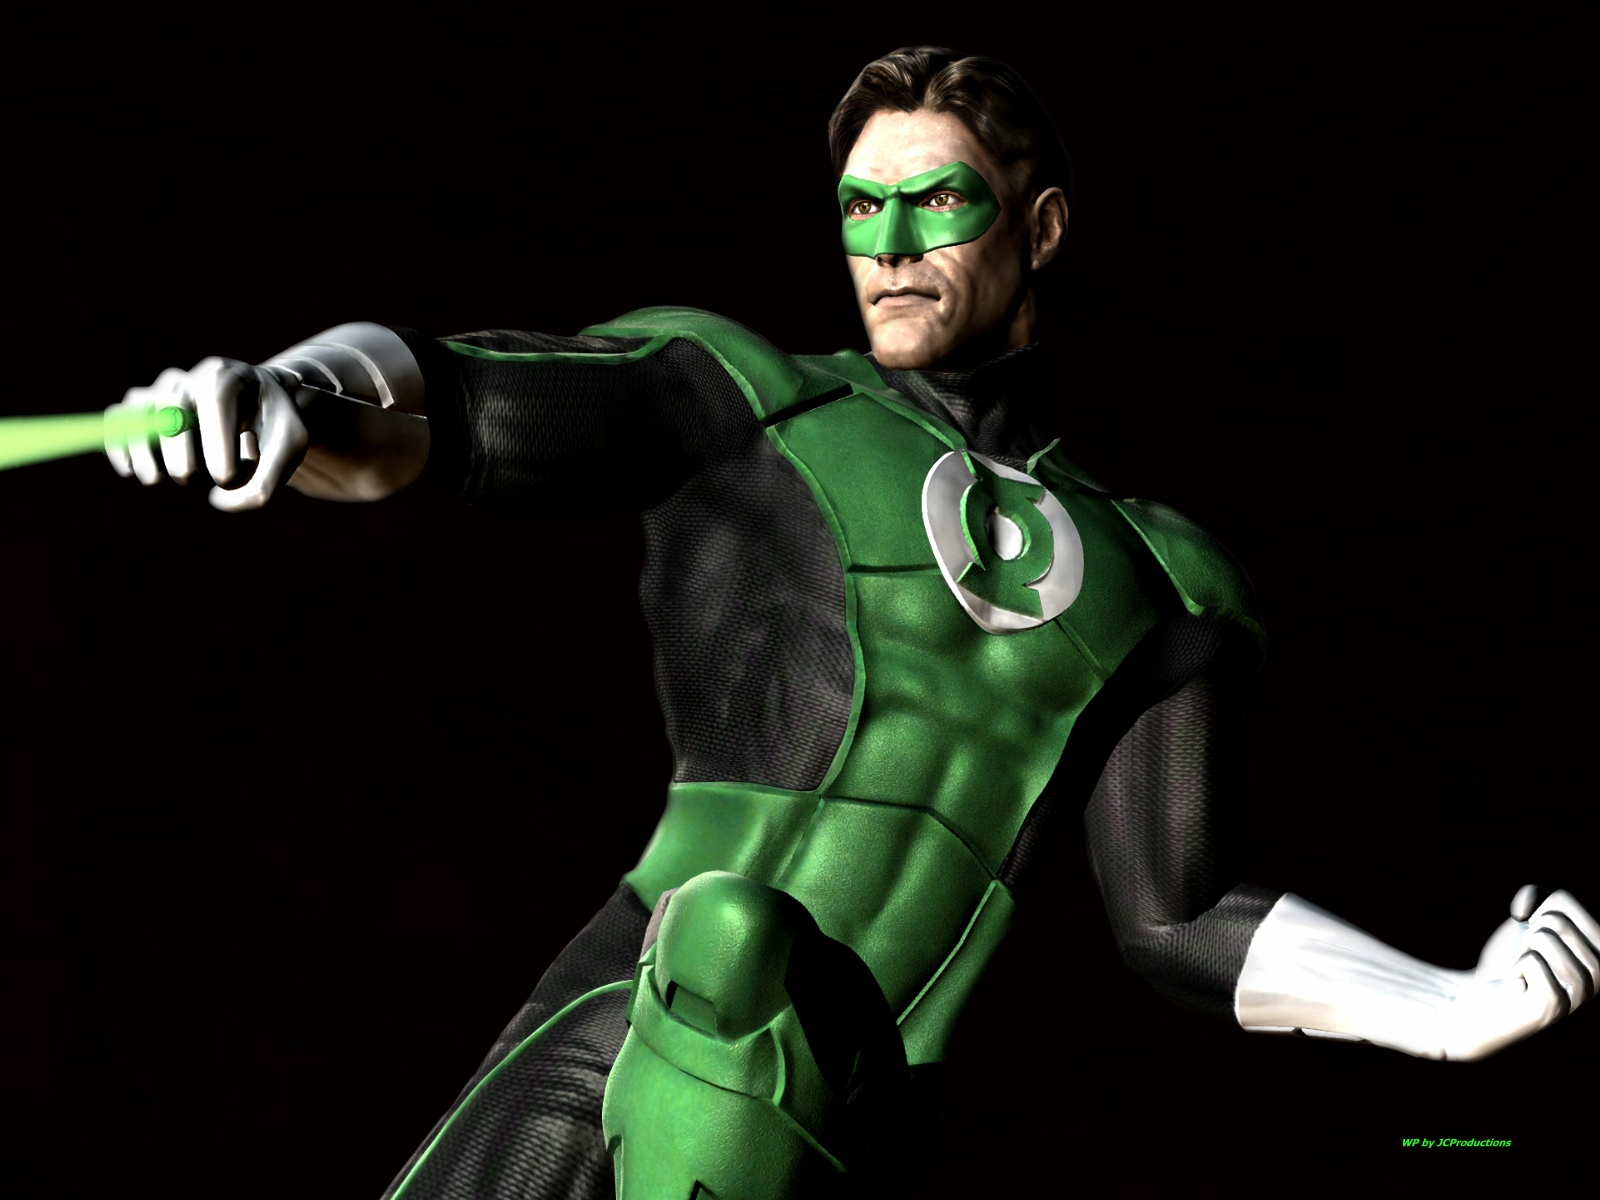 papier peint lanterne verte,personnage fictif,super héros,figurine,supervillain,la lanterne verte